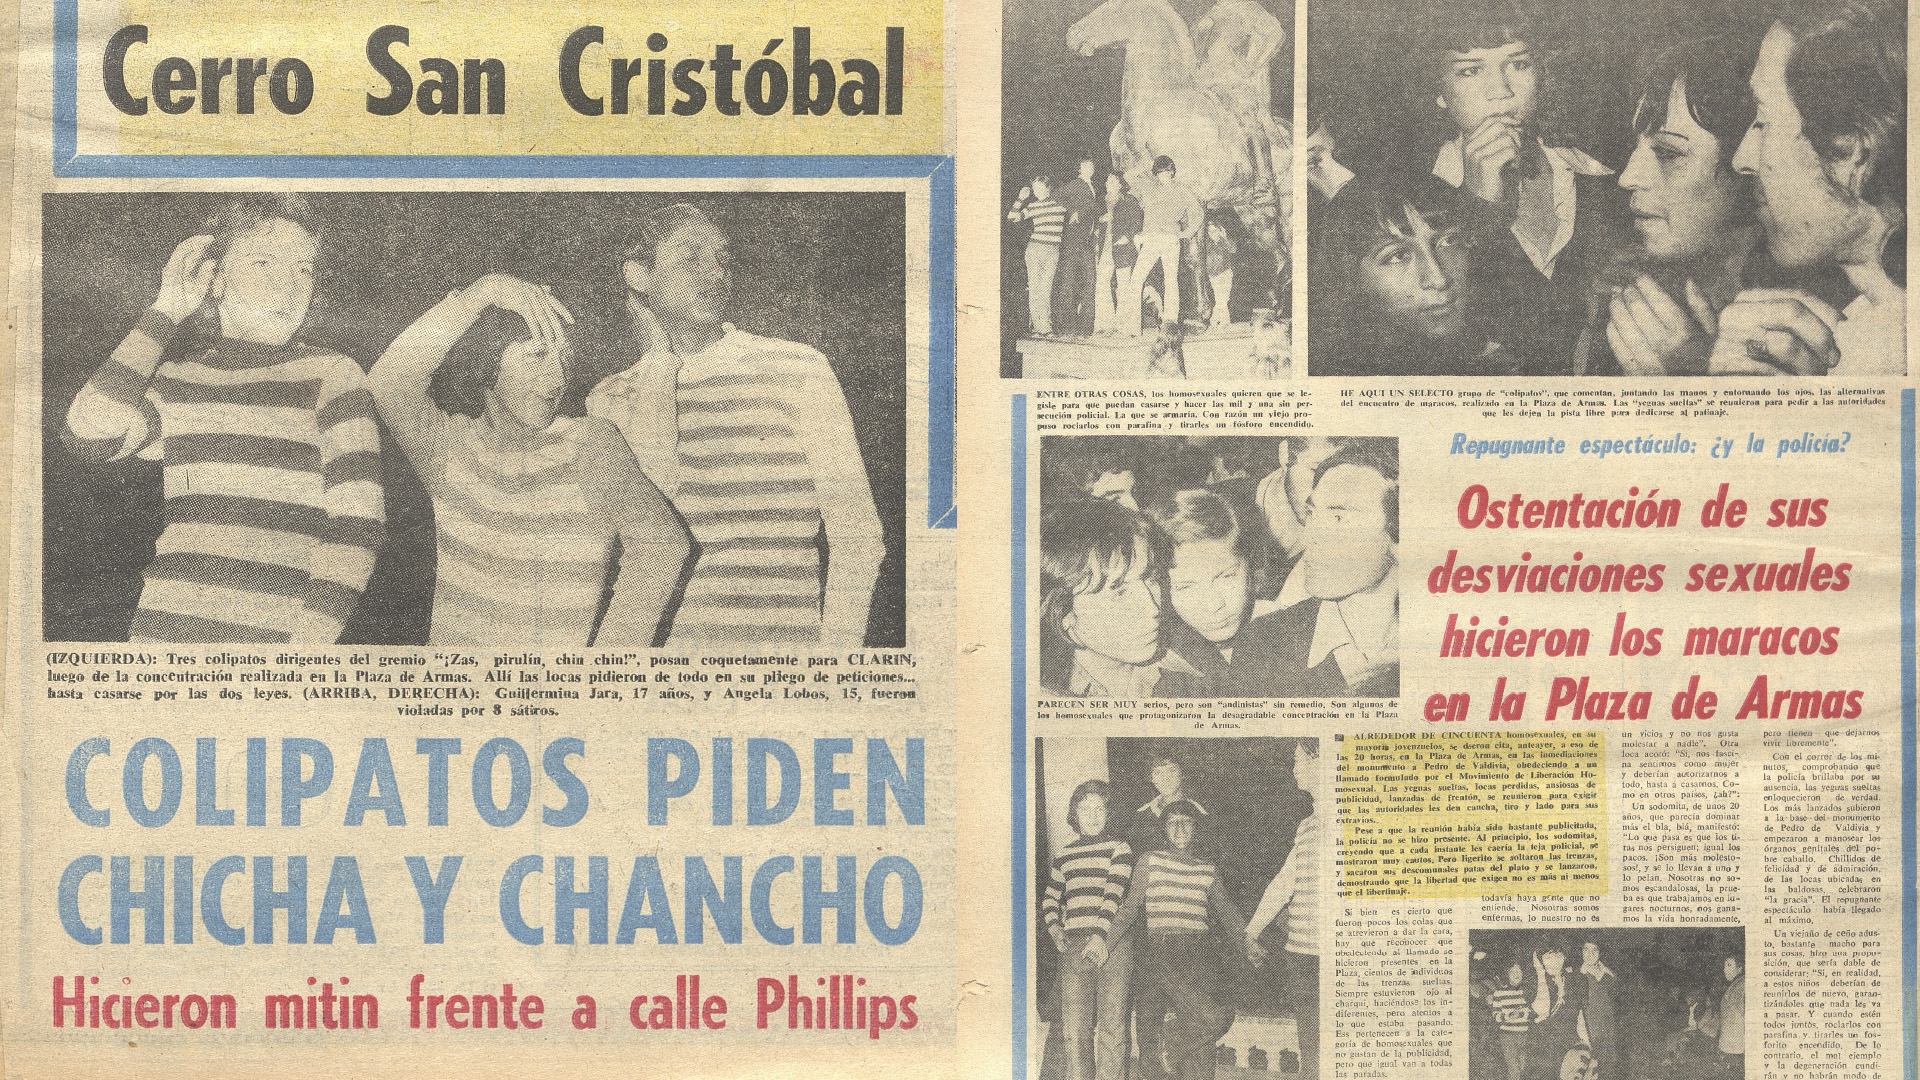 La cobertura del diario allendista Clarín, clausurado tras el golpe de Pinochet en septiembre de 1973, de la primera Marcha del Orgullo en Chile realizada en abril de ese año.